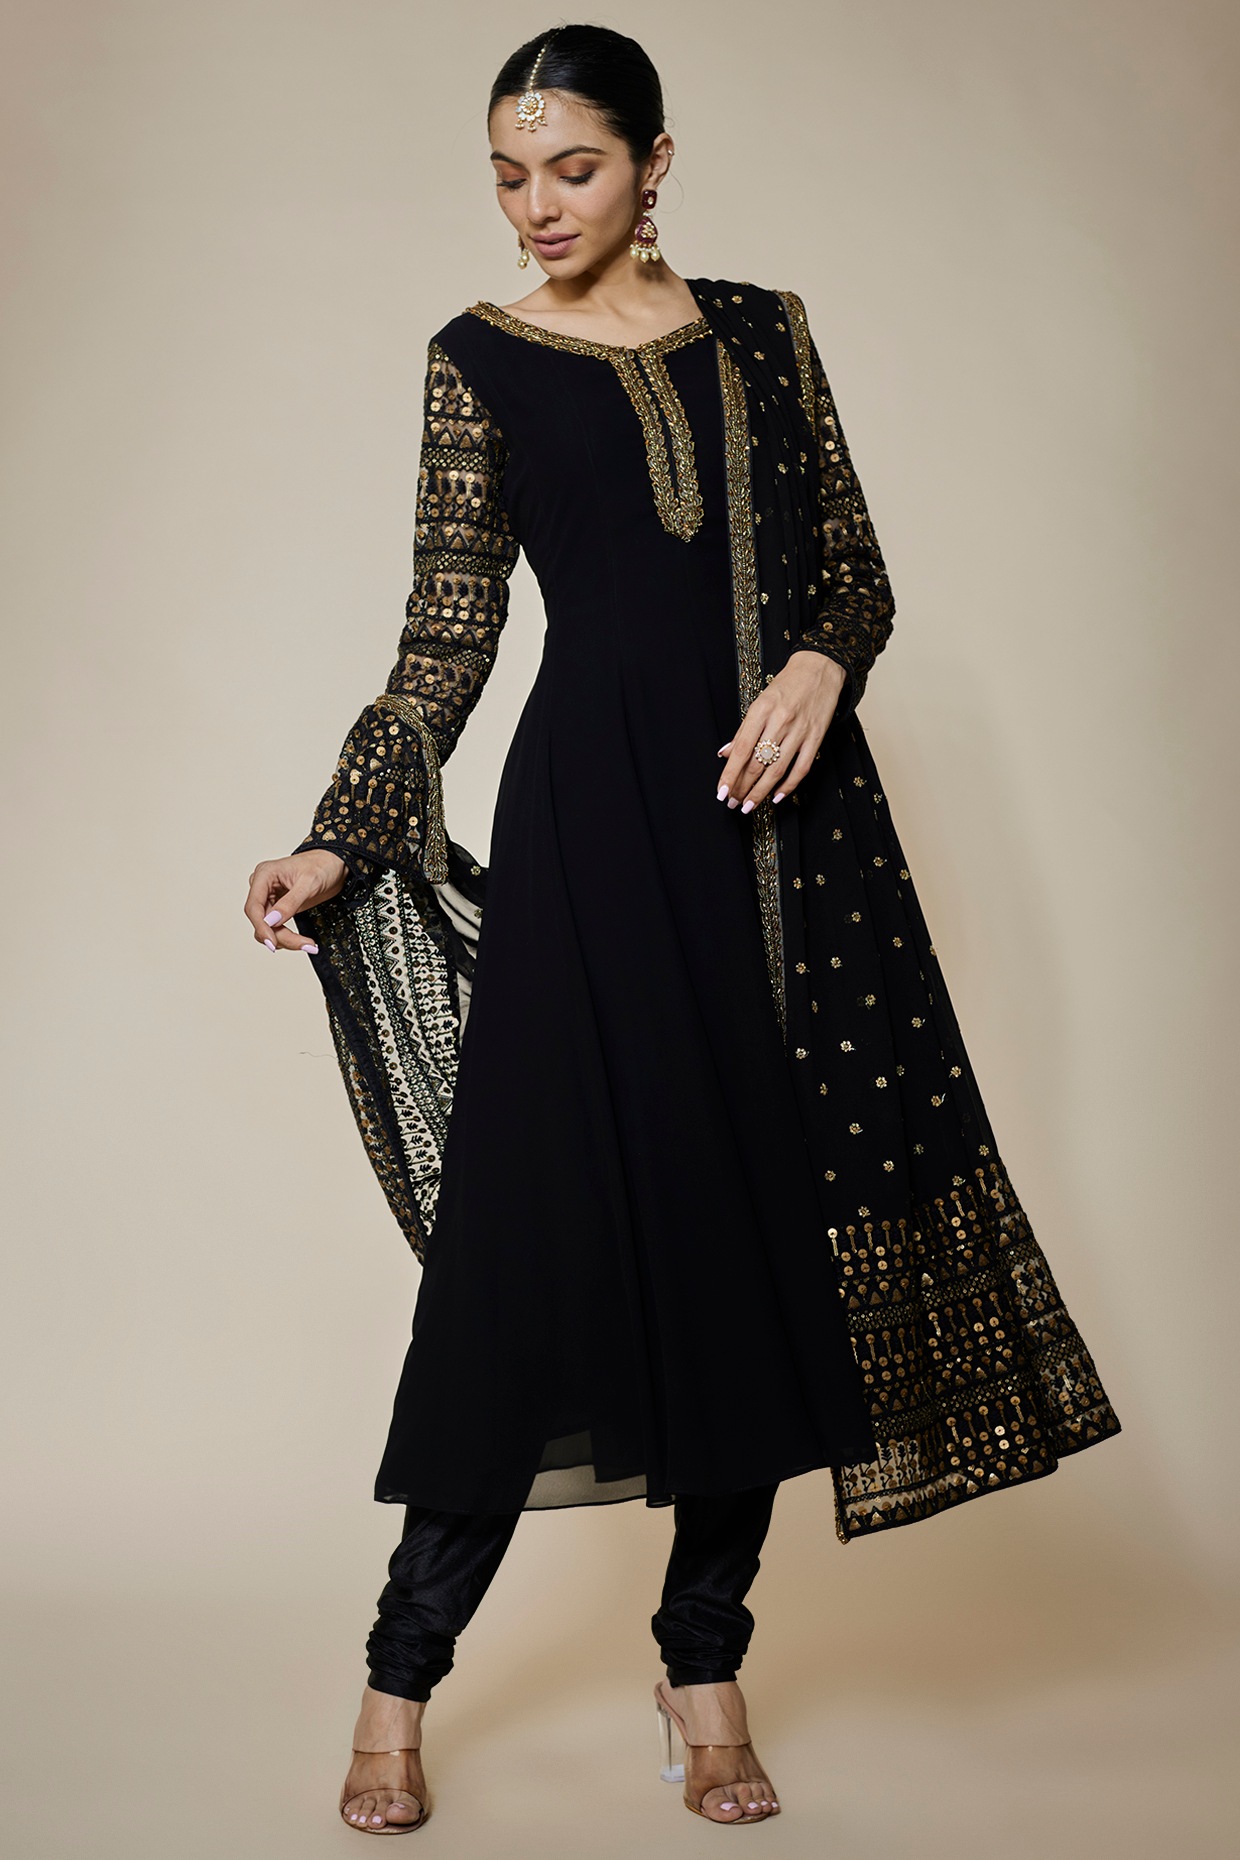 New Fancy & Stylish Designer Anarkali Suit Marriage Function Wear Salwar  Kameez | eBay